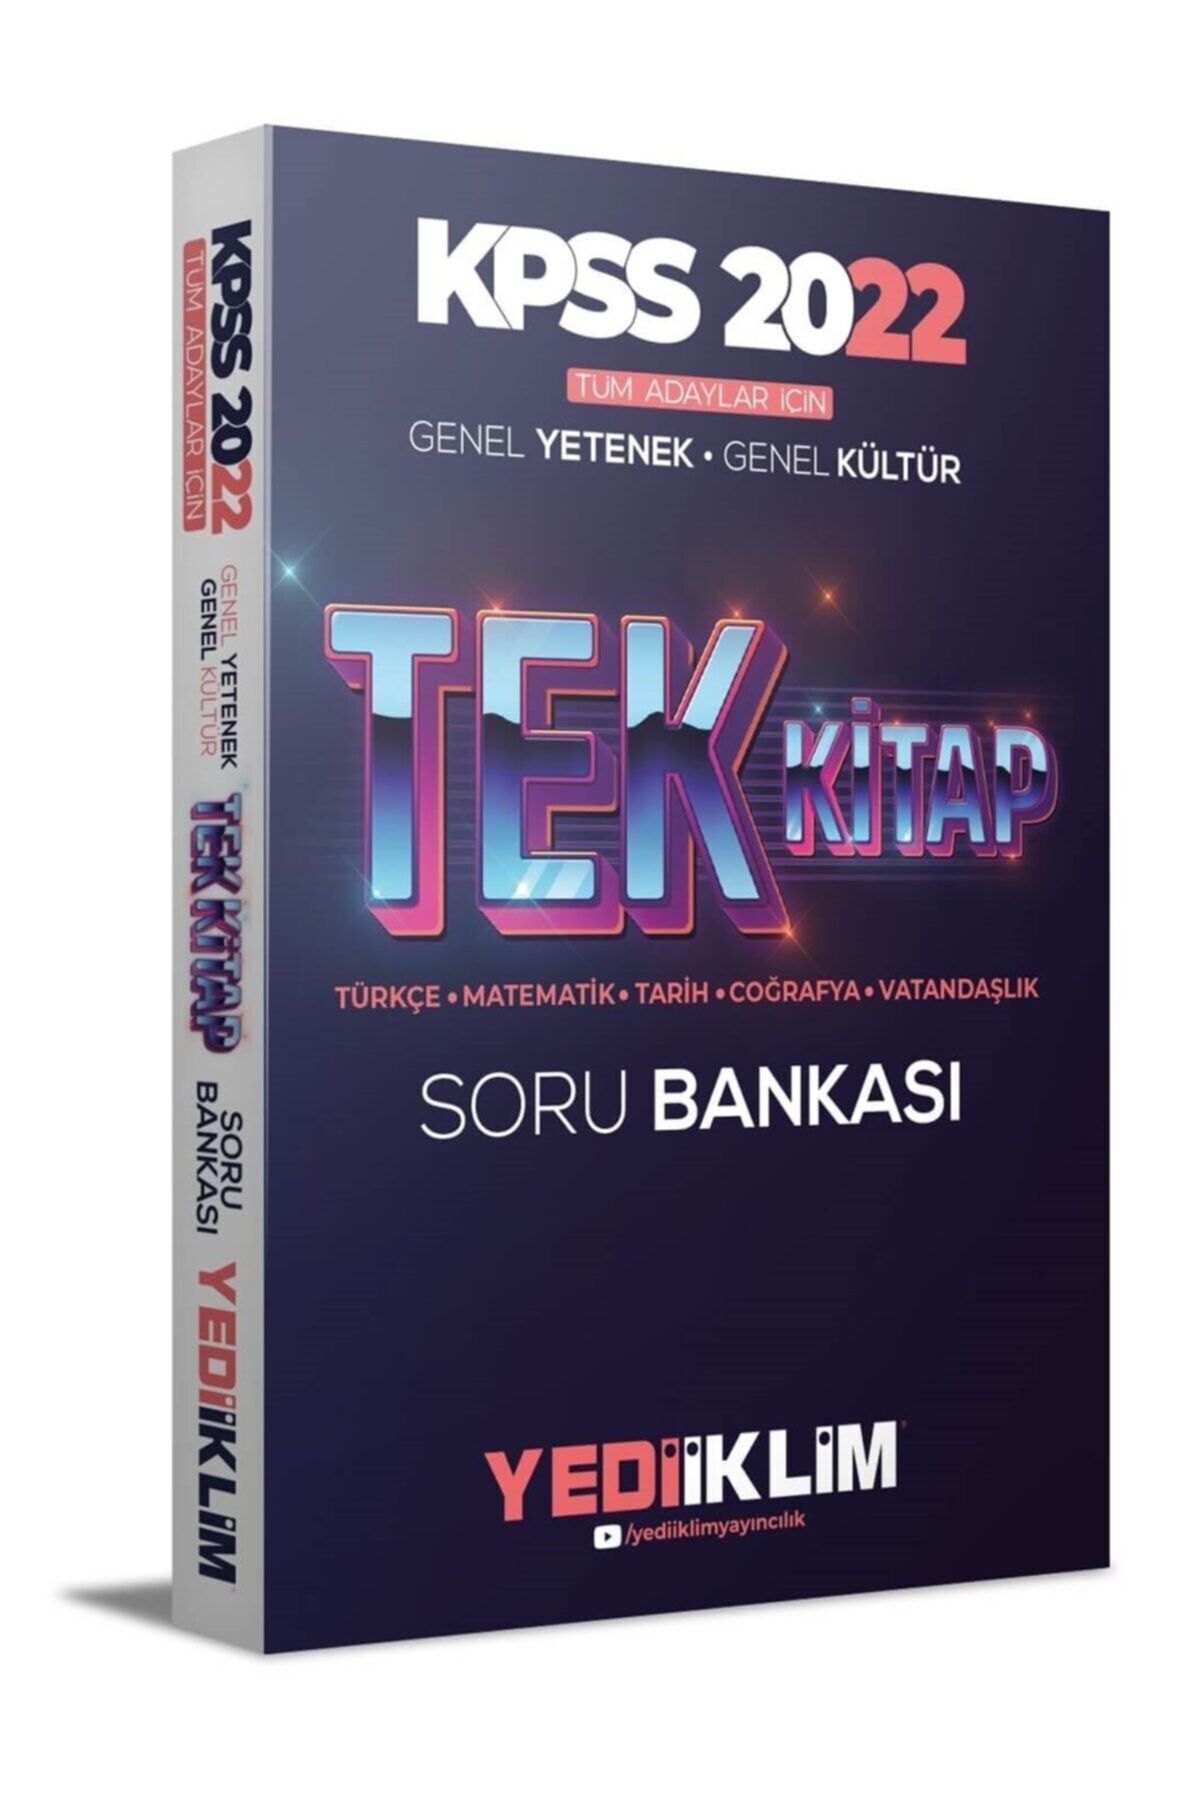 Yediiklim Yayınları Kpss 2022 Tüm Adaylar Için Genel Yetenek Genel Kültür Tek Kitap Soru Bankası